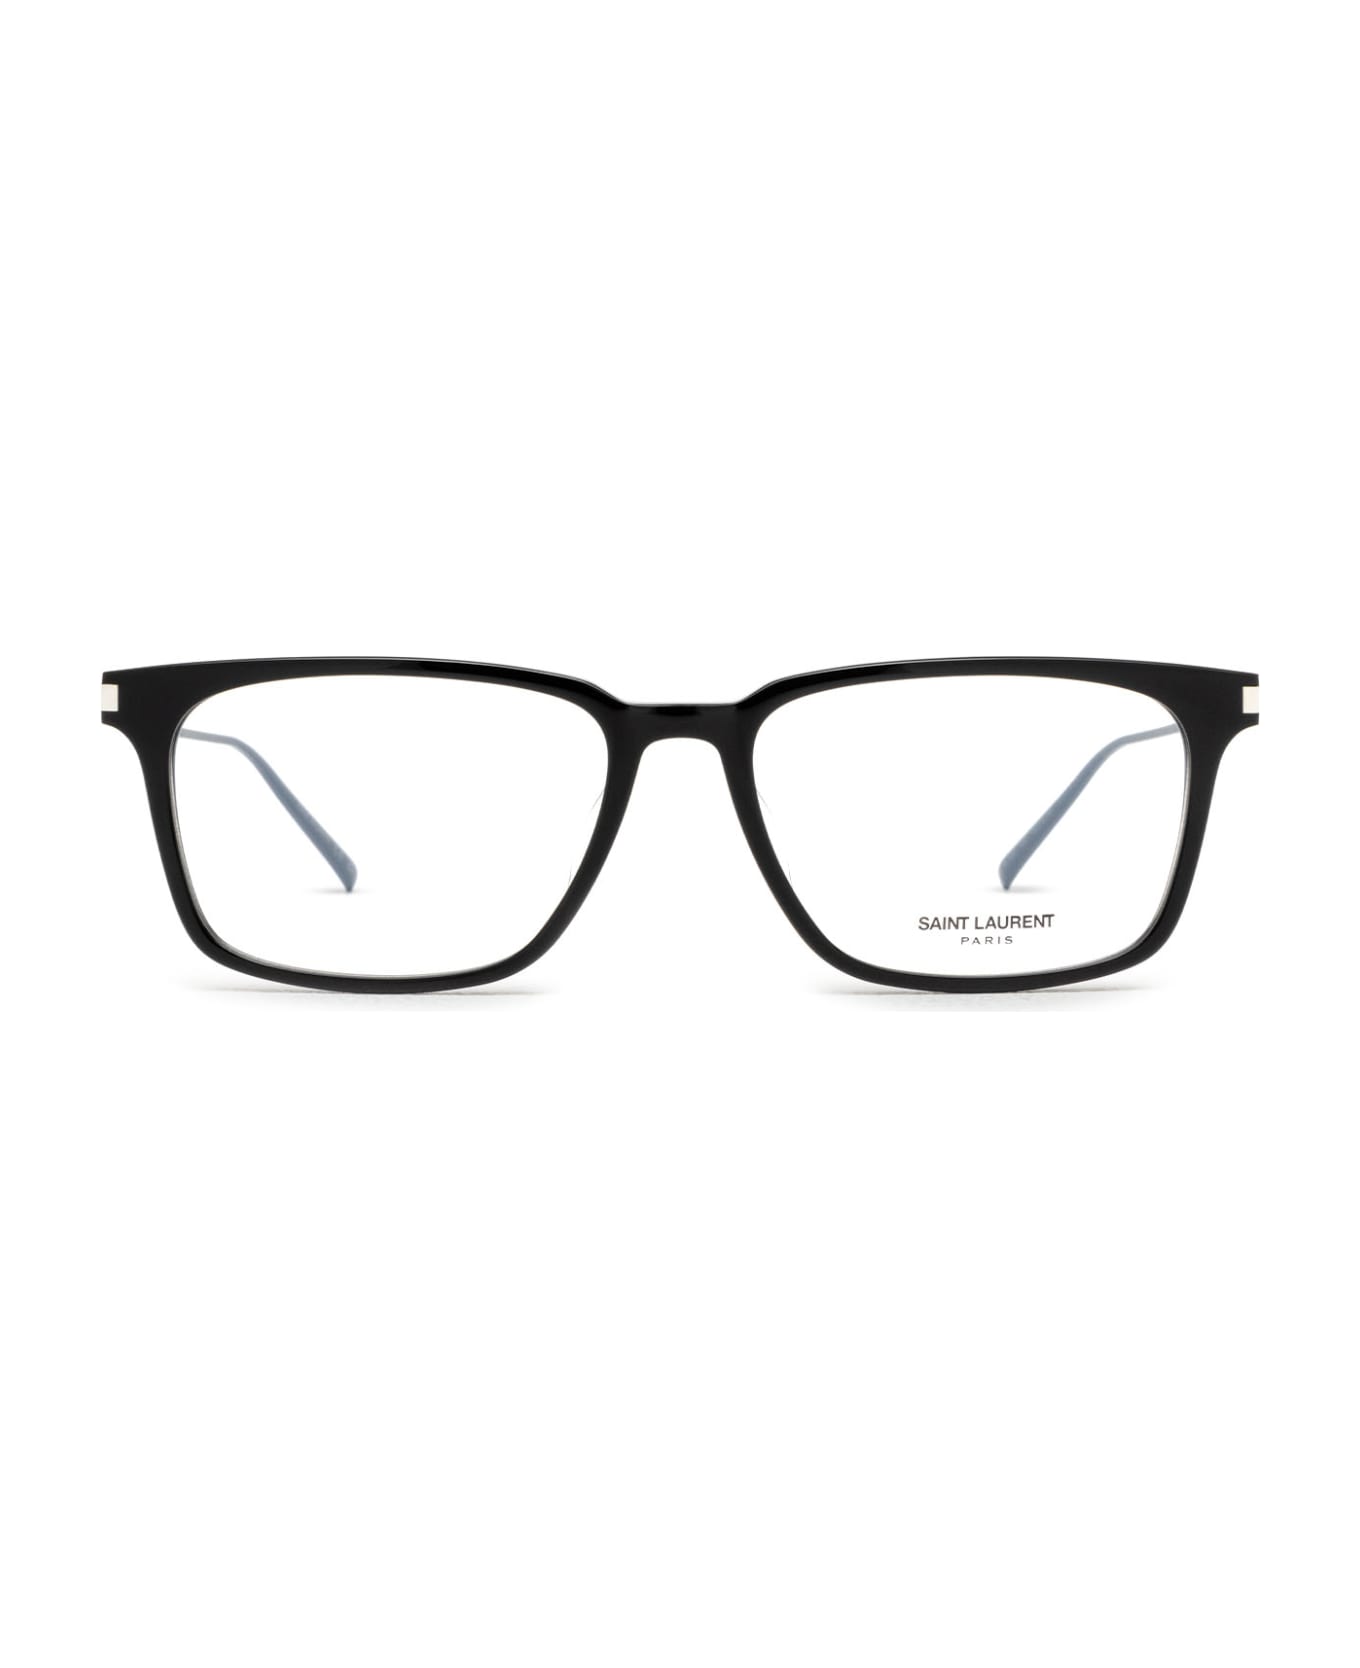 Saint Laurent Eyewear Sl 625 Black Glasses - Black アイウェア